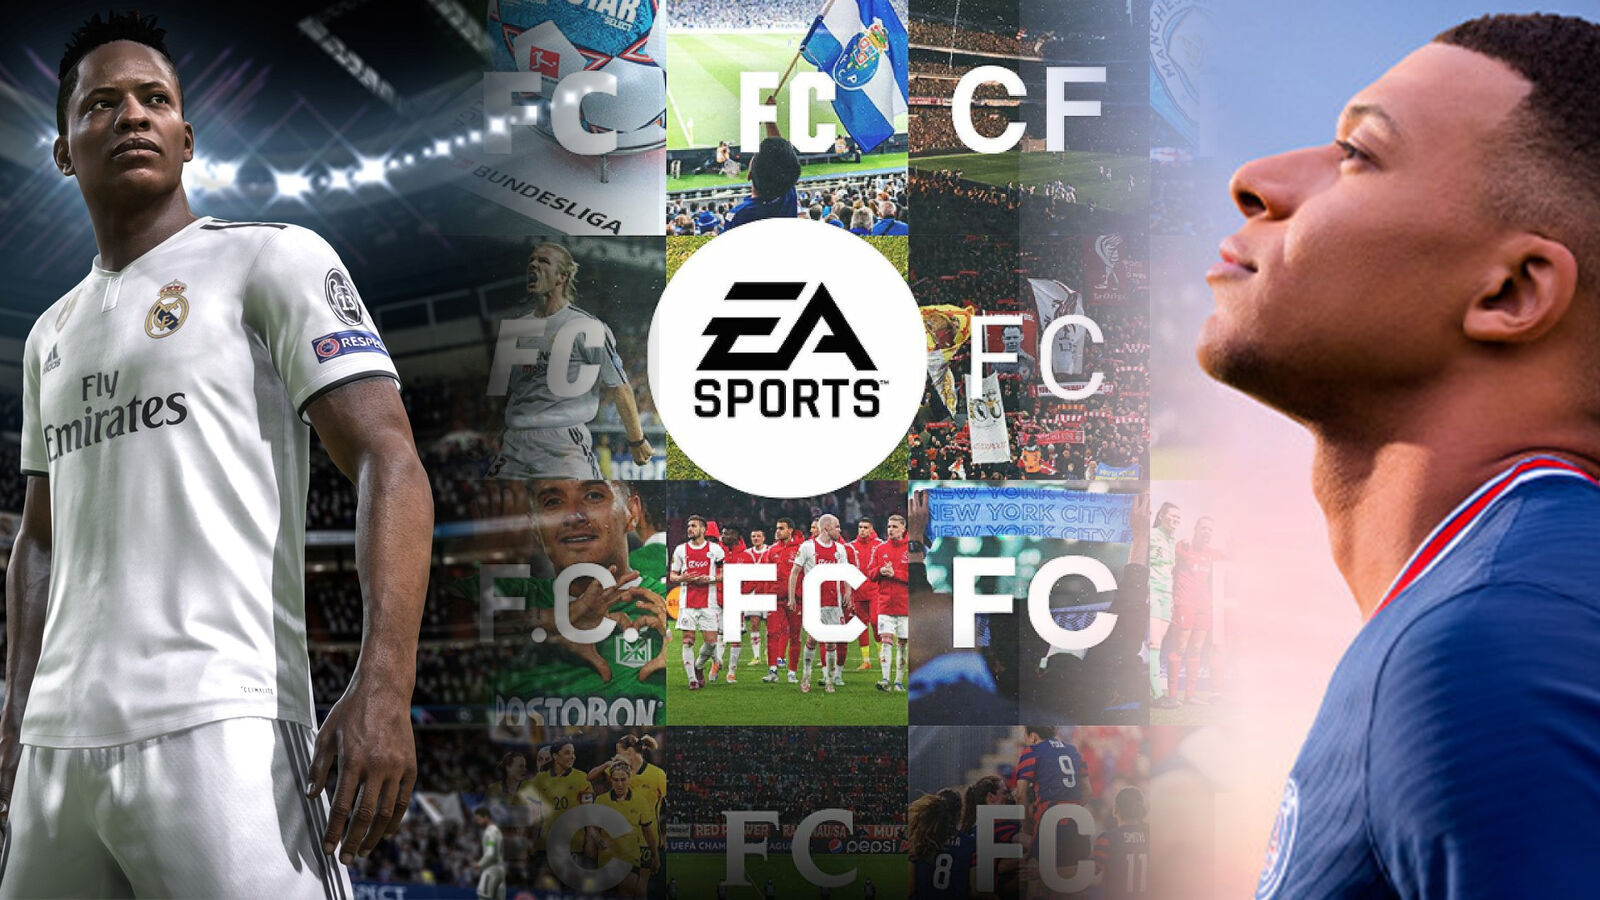 EA SPORTS FC è un altro potenziale stallo nella battaglia per le licenze tra FIFA e UEFA?